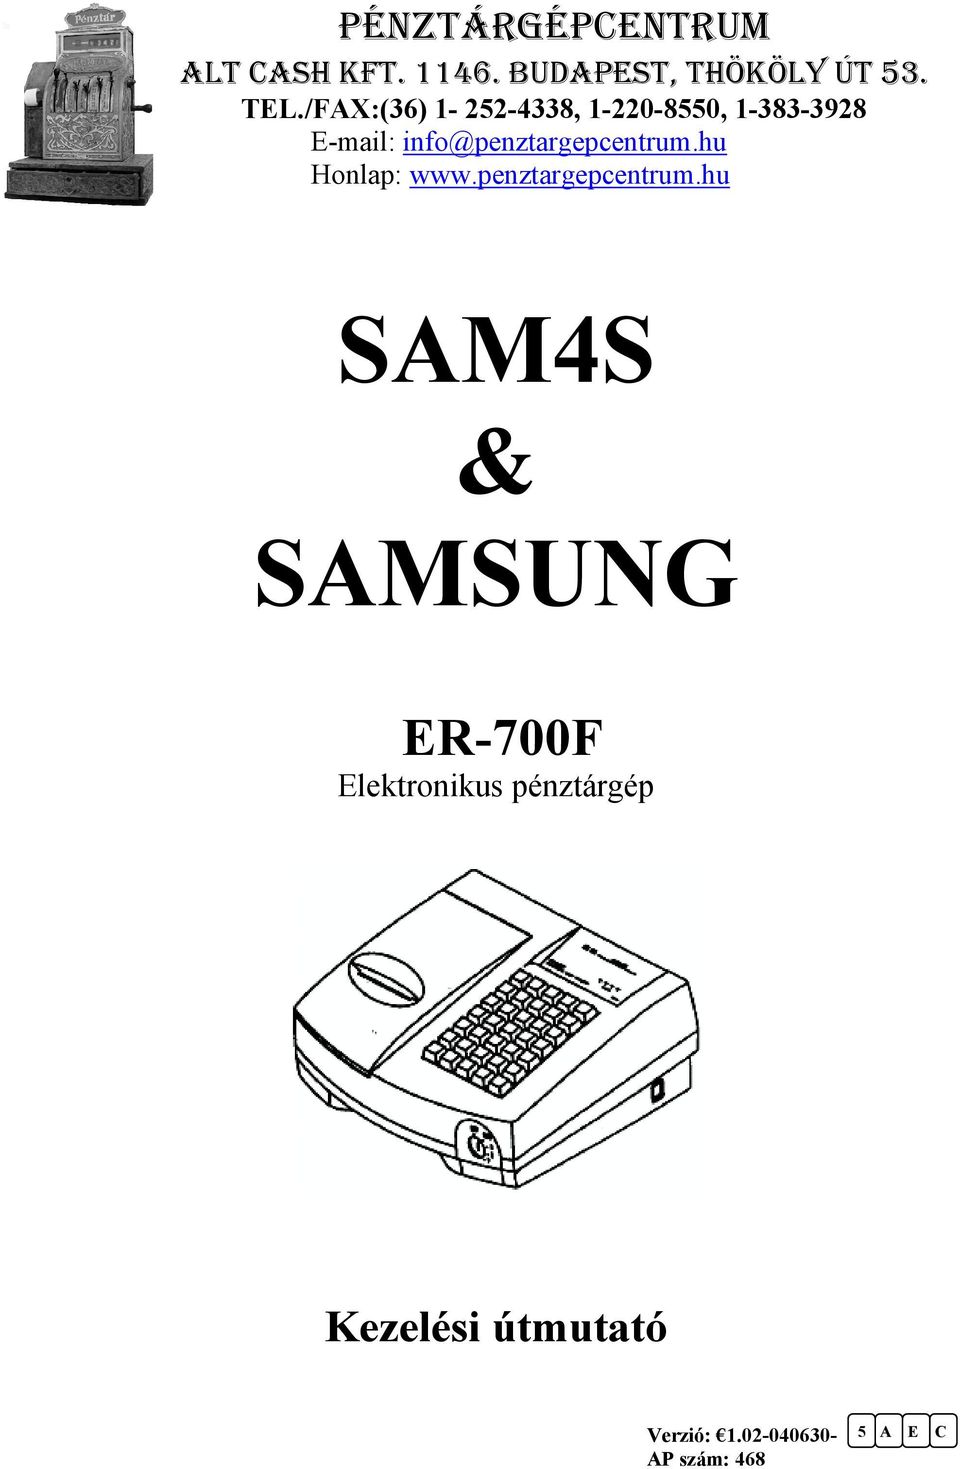 SAM4S & SAMSUNG. ER-700F Elektronikus pénztárgép. Kezelési útmutató  PÉNZTÁRGÉPCENTRUM - PDF Ingyenes letöltés